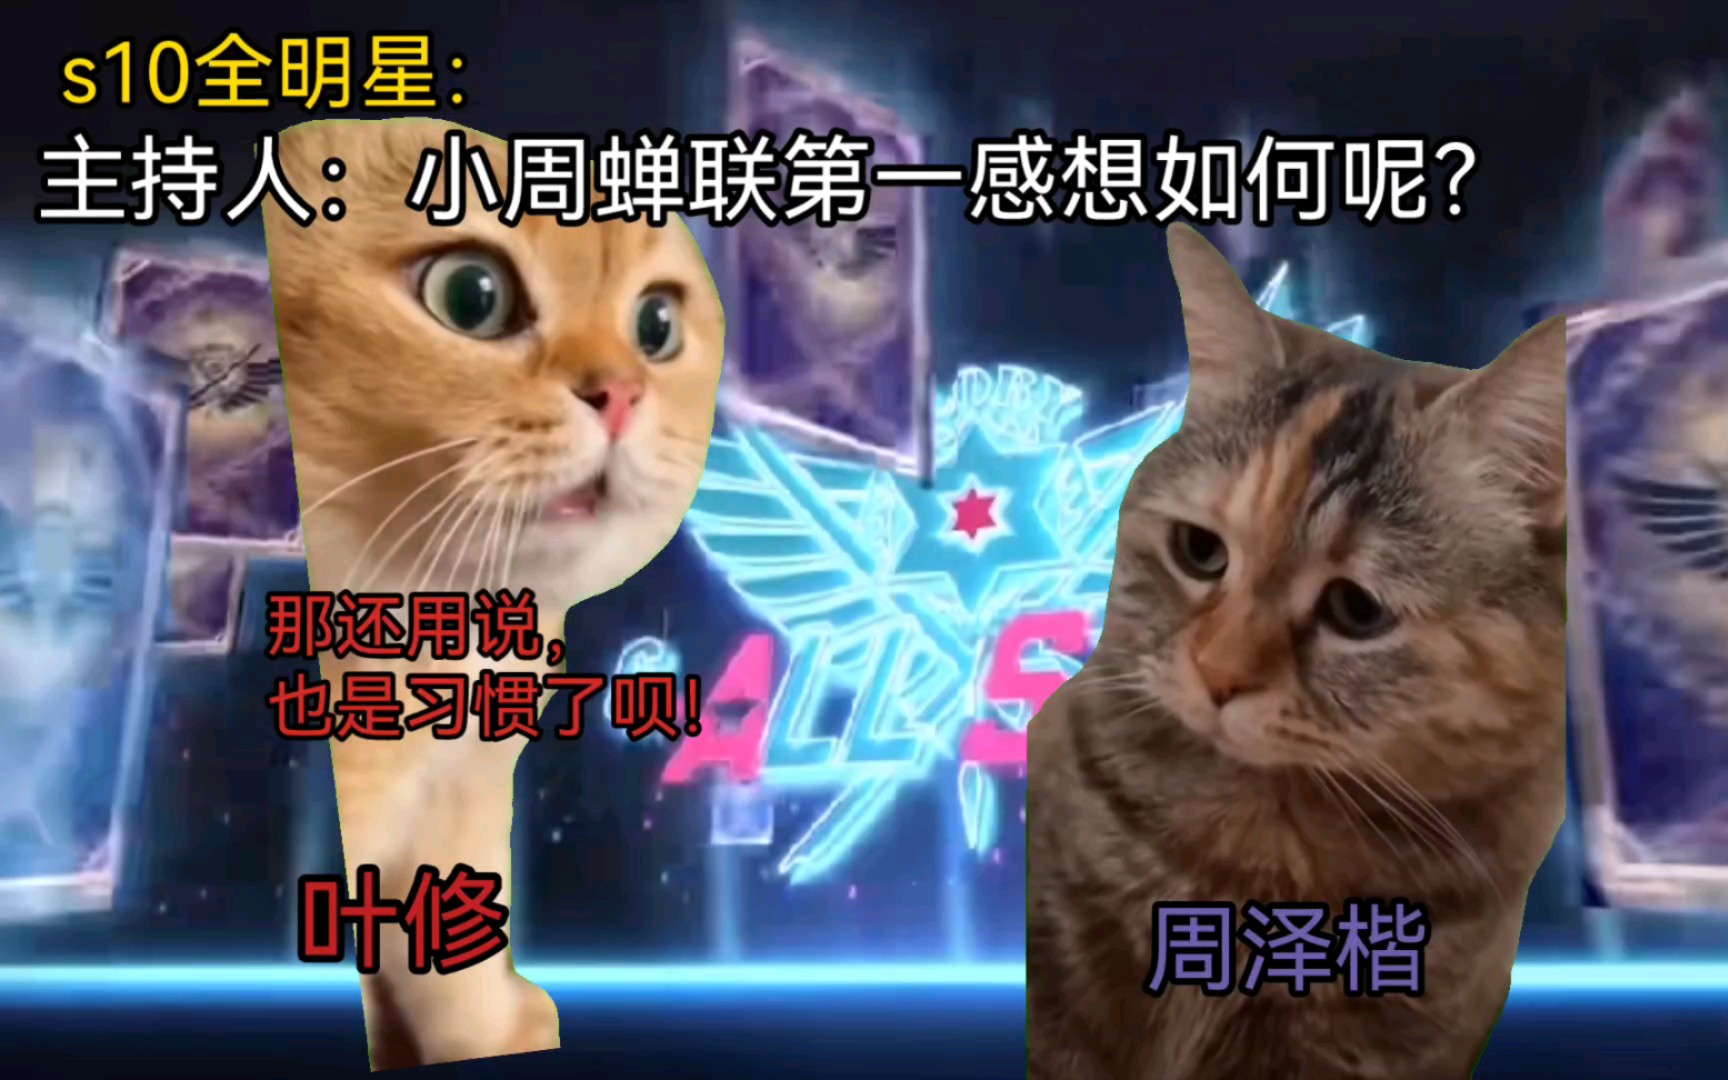 【猫meme】荣耀全明星赛采访现场